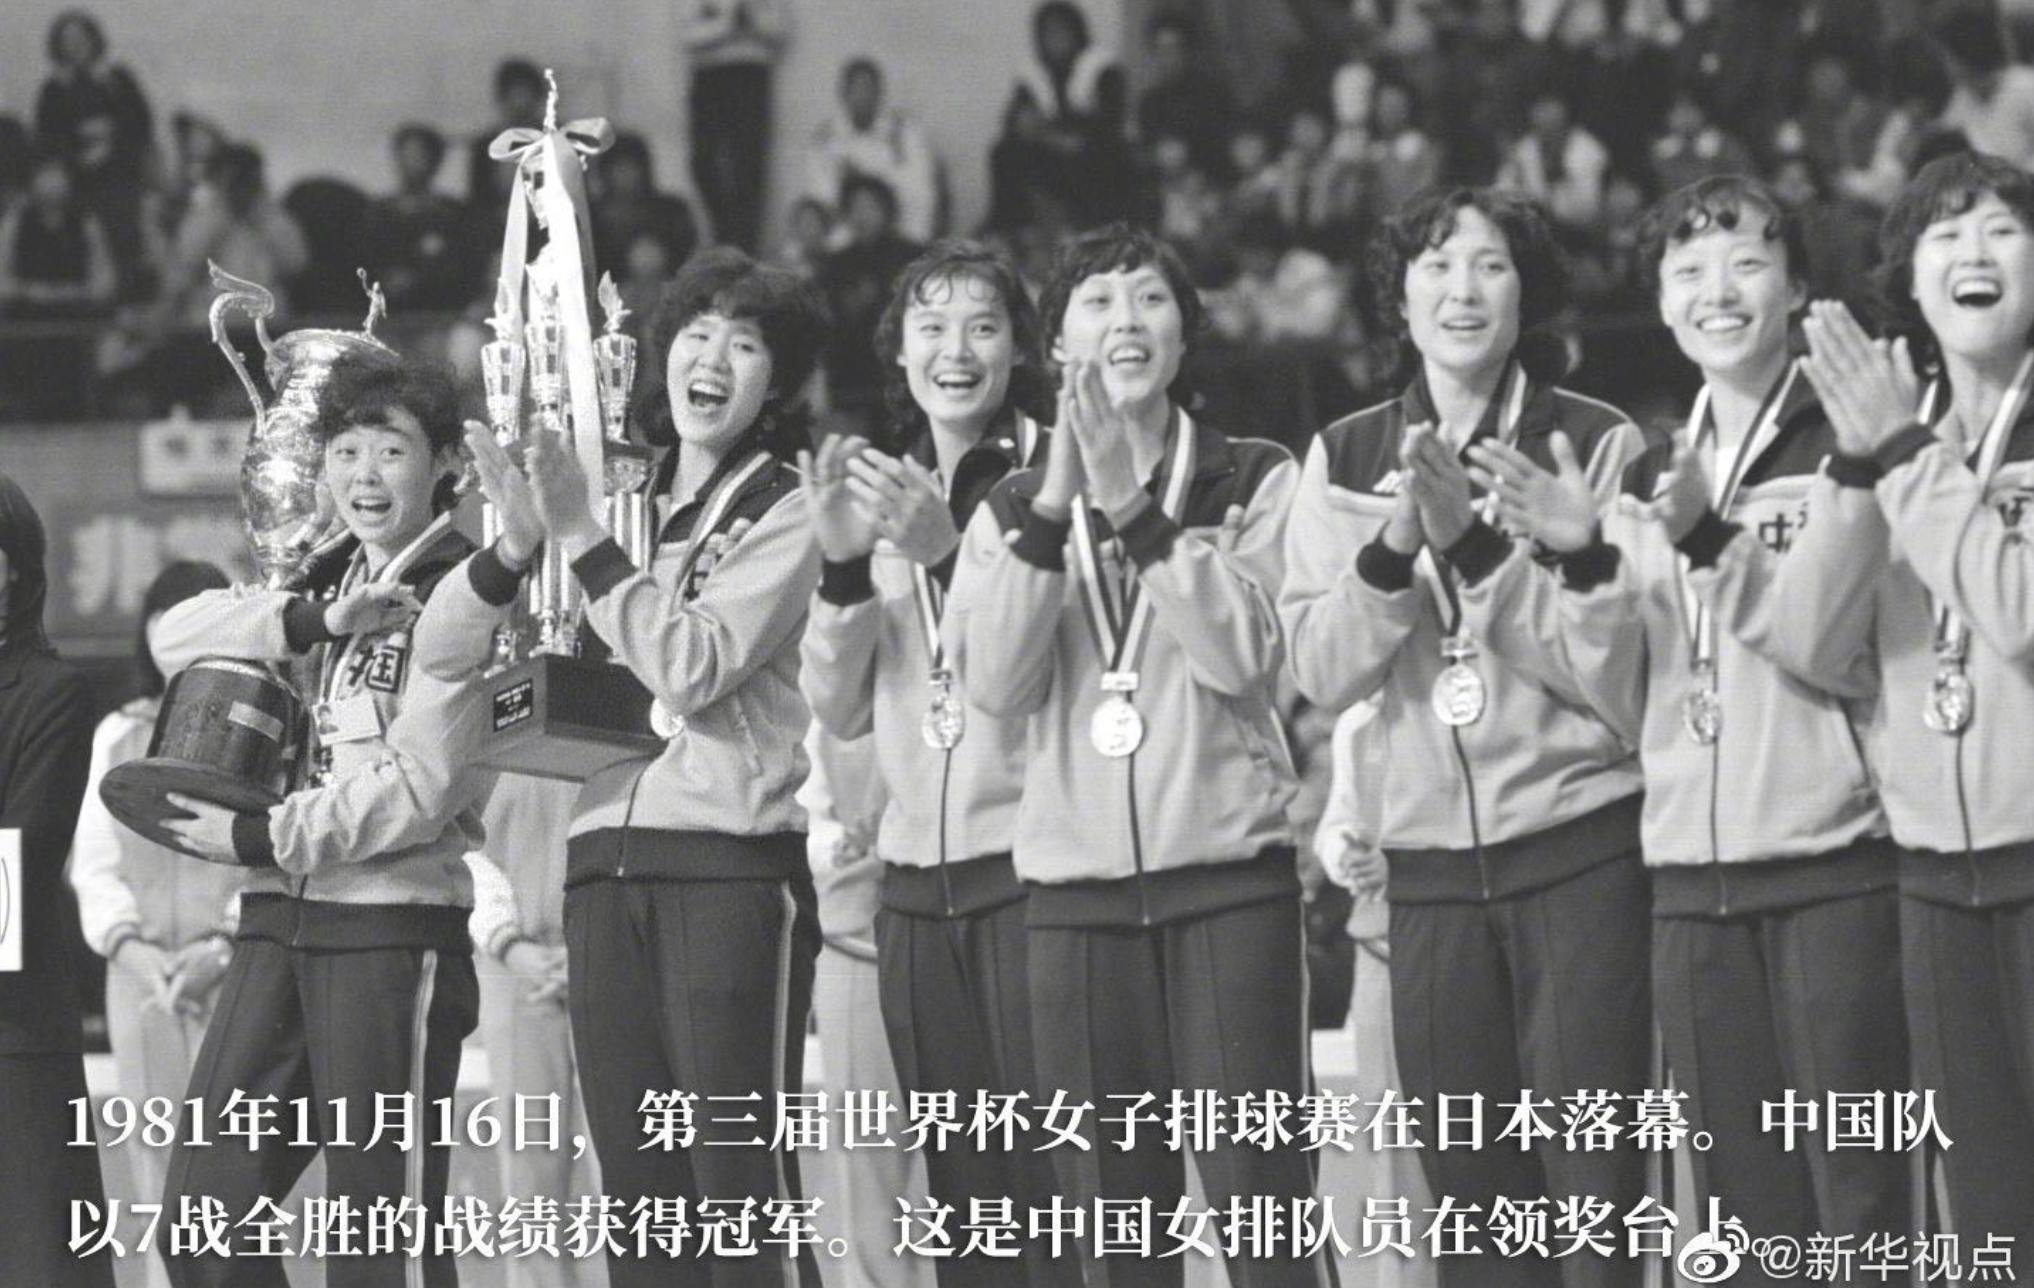 1981年 女排世界杯夺冠